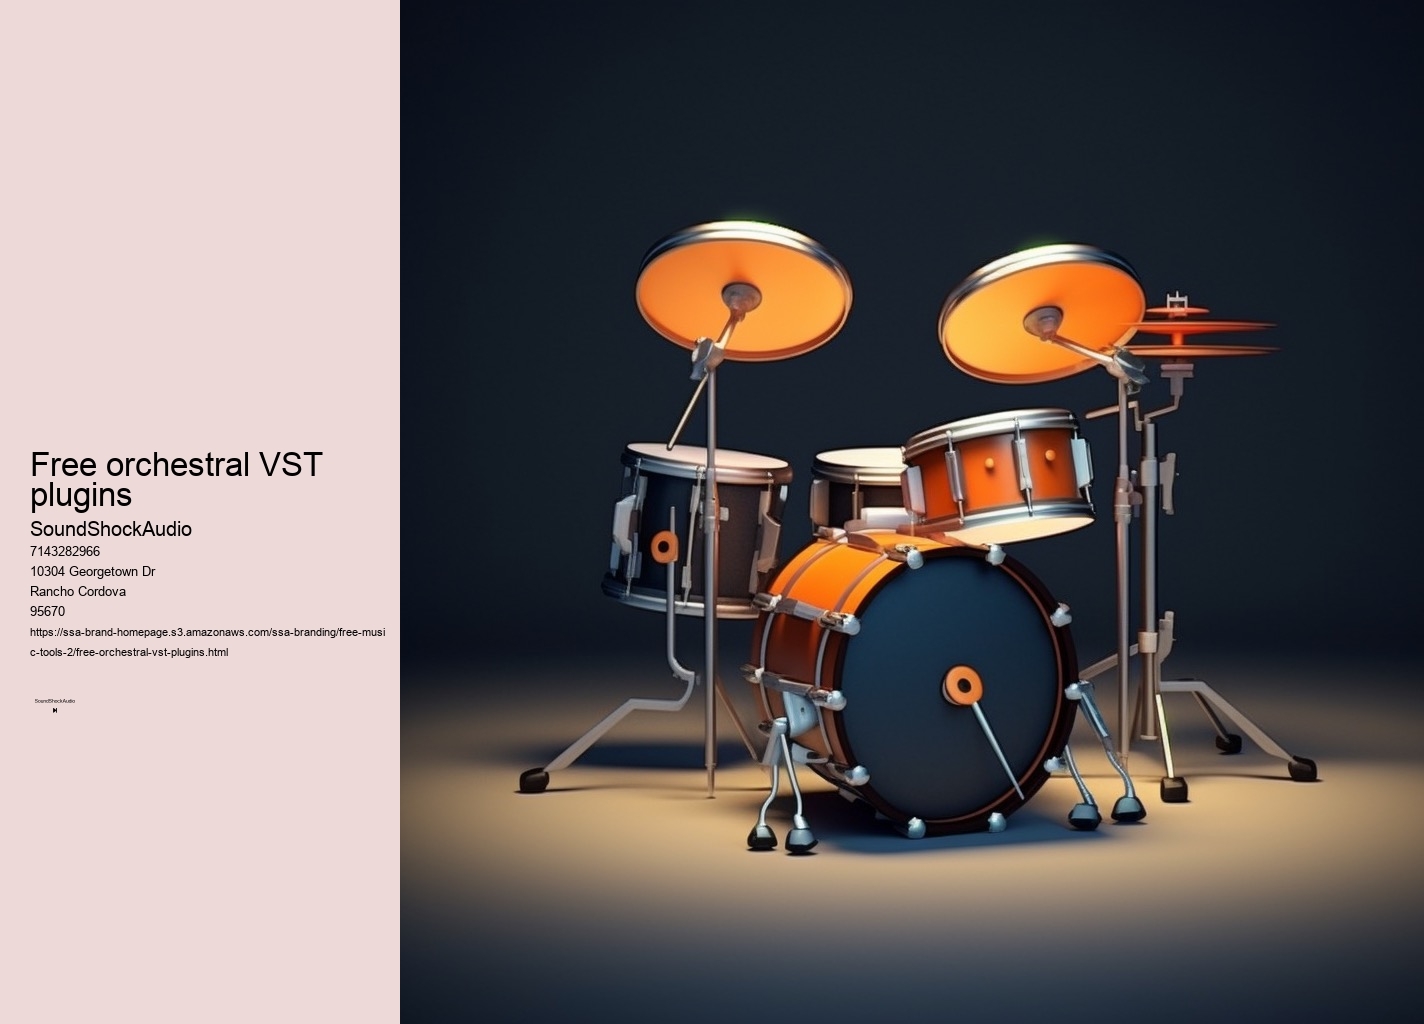 free orchestral VST plugins